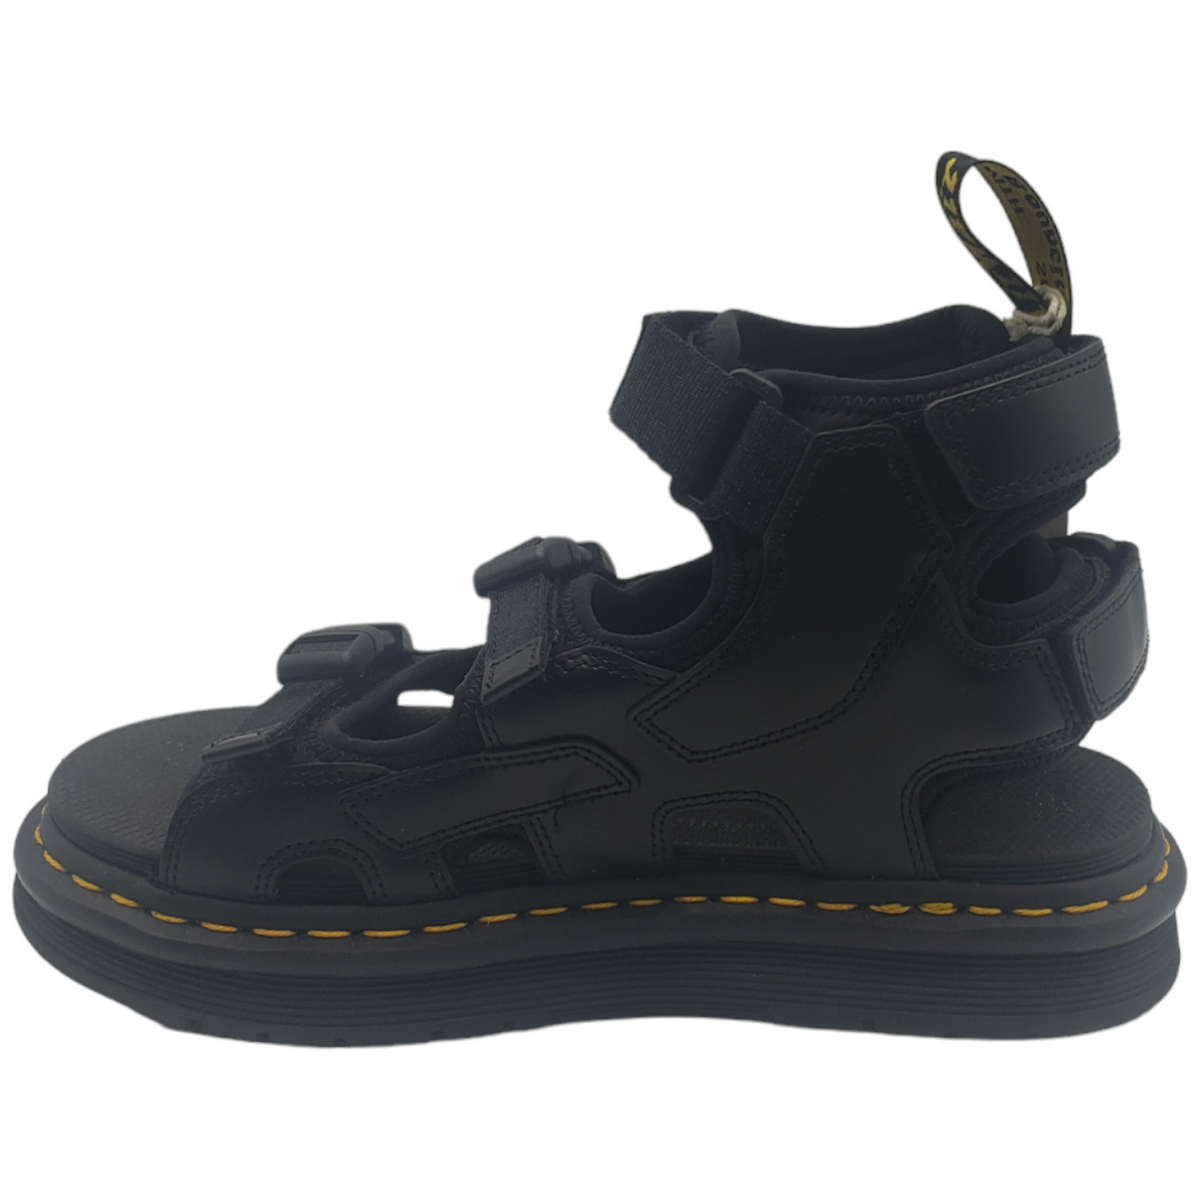 Dr Martens X Suicoke Boke Black Sandals